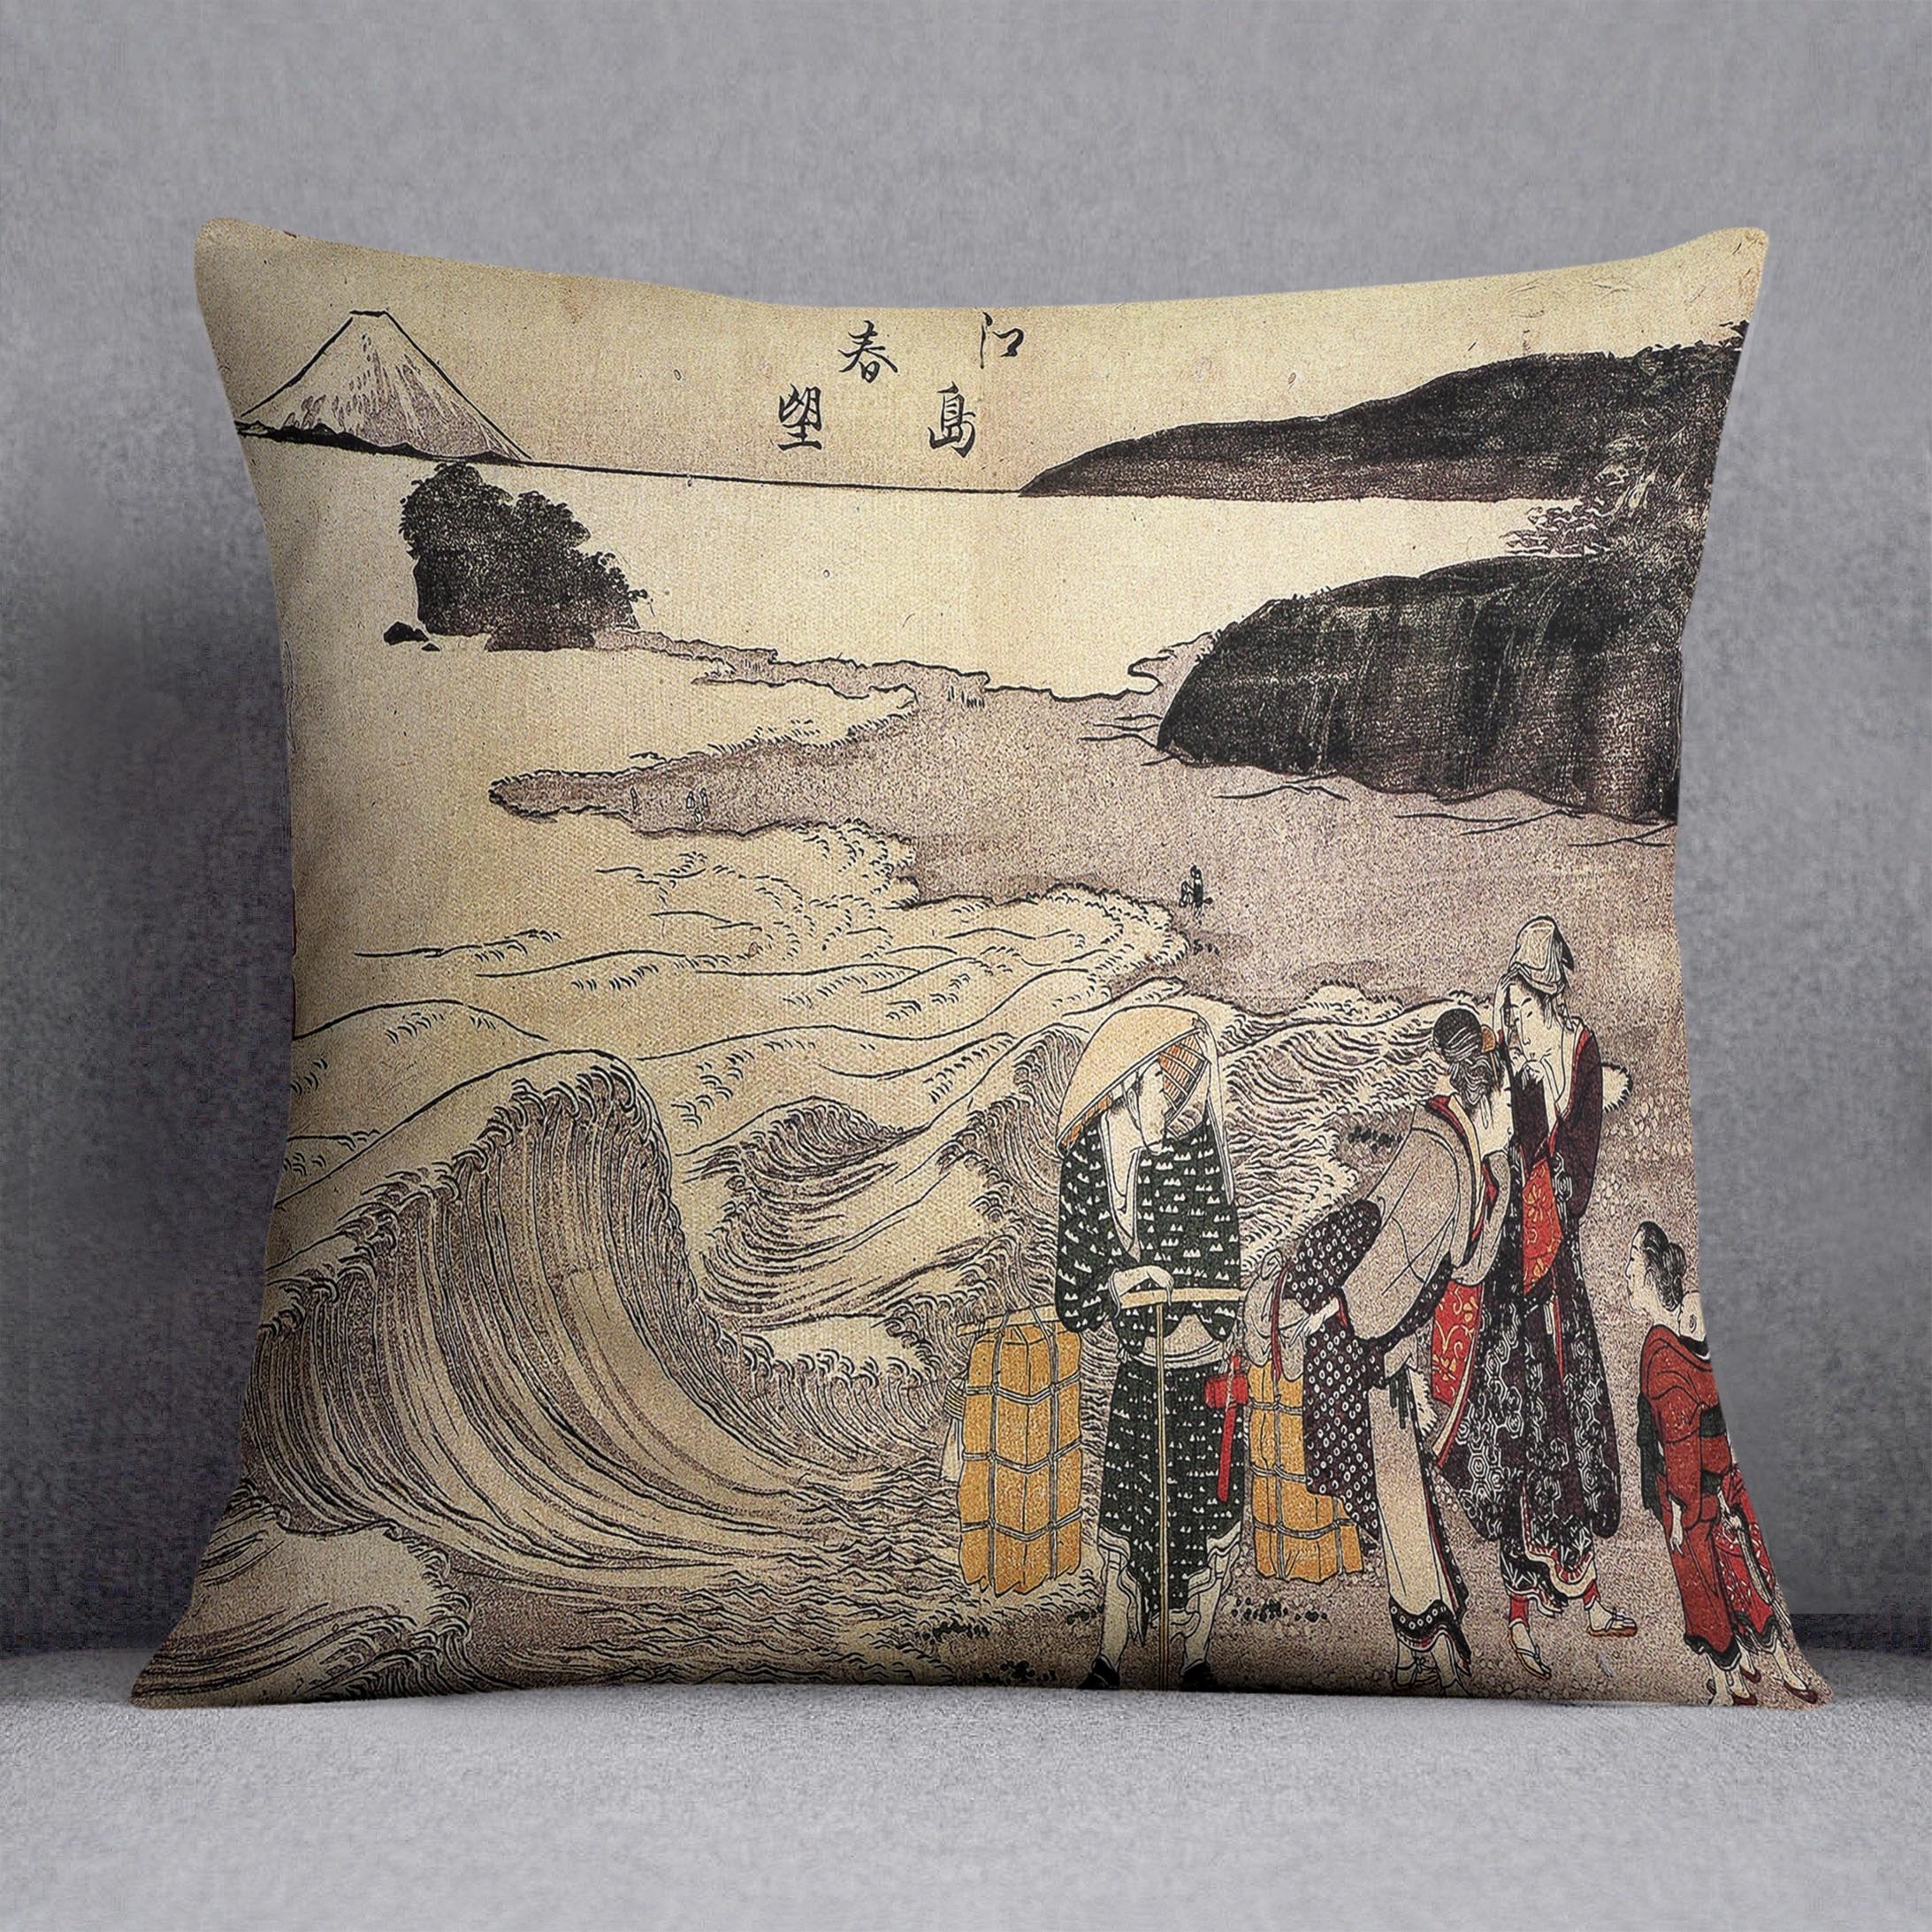 Women on the beach of Enoshima by Hokusai Throw Pillow